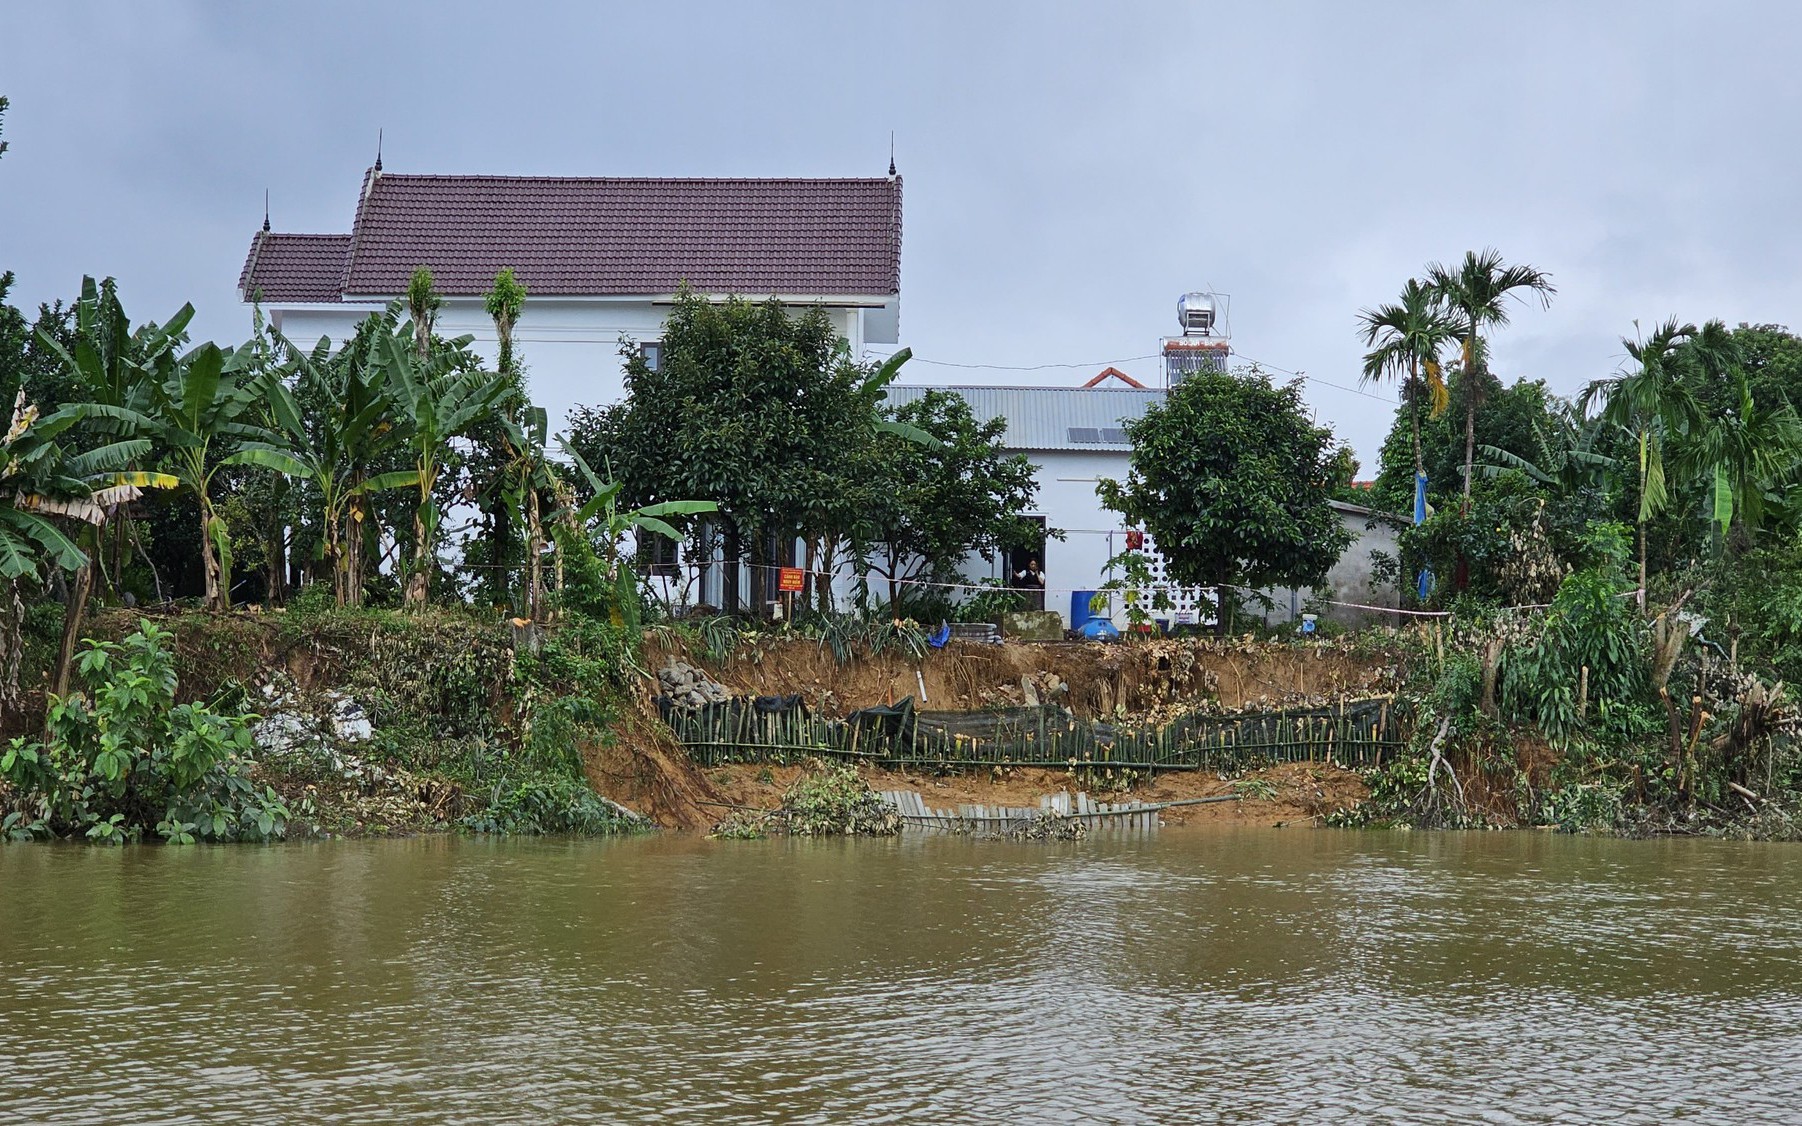 Sau mưa lớn, nhiều người dân bất an vì nhà cửa bị sông cuốn trôi